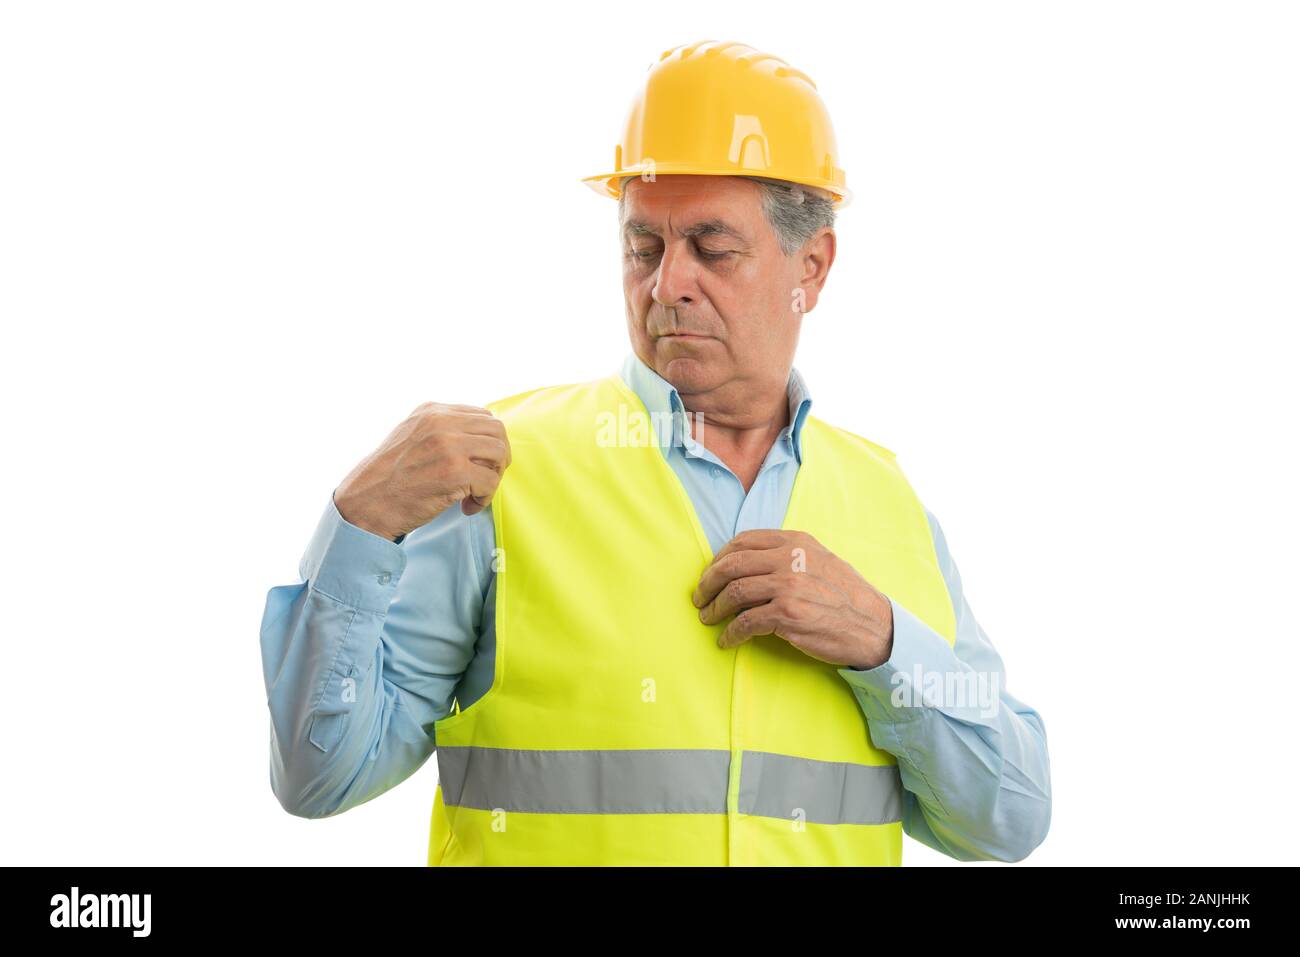 Alten männlichen builder Anordnen von fluoreszierenden Weste als Arbeit Kleidung fertig für die Arbeit an Weißen studio Hintergrund isoliert Stockfoto